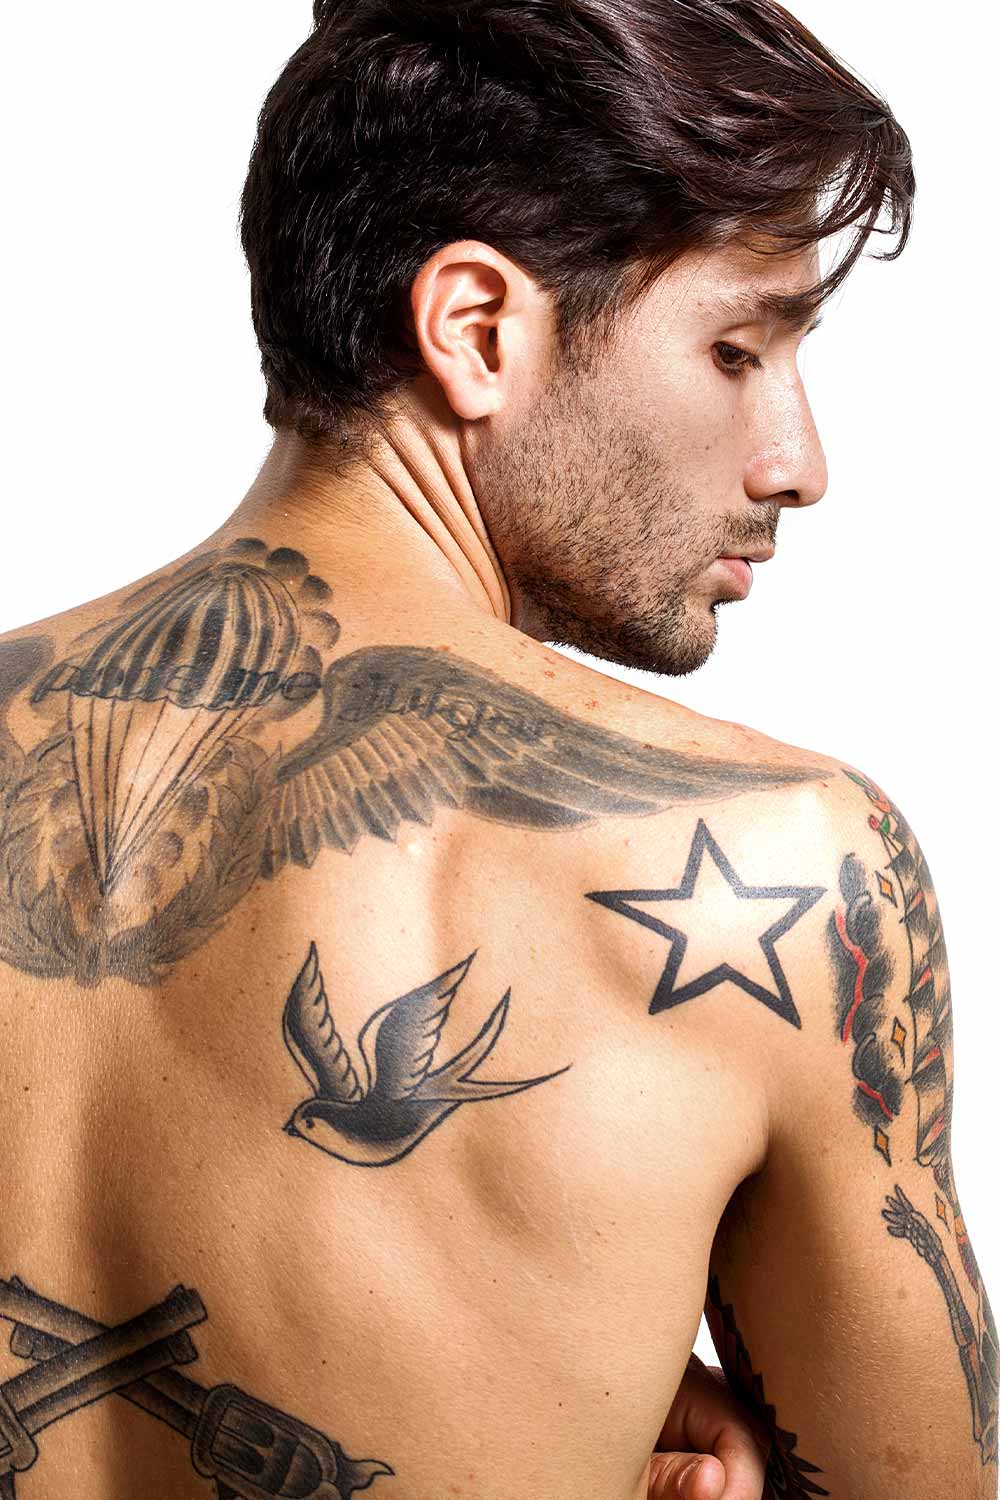 Tattoo Styles: Geometric Tattoos